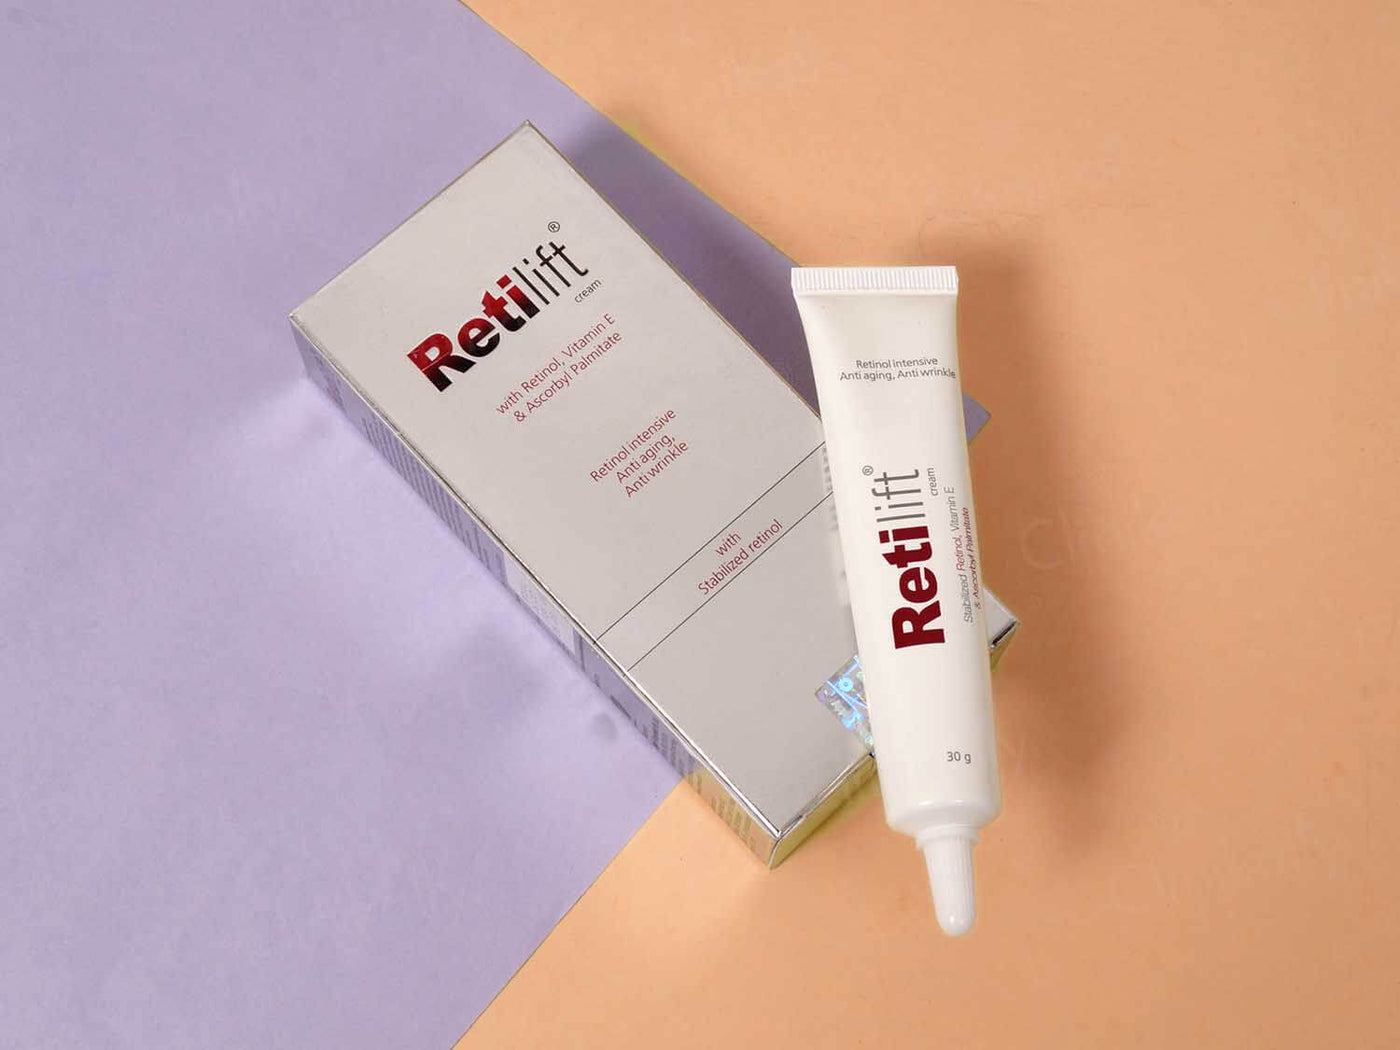 Retilift Cream - Clinikally